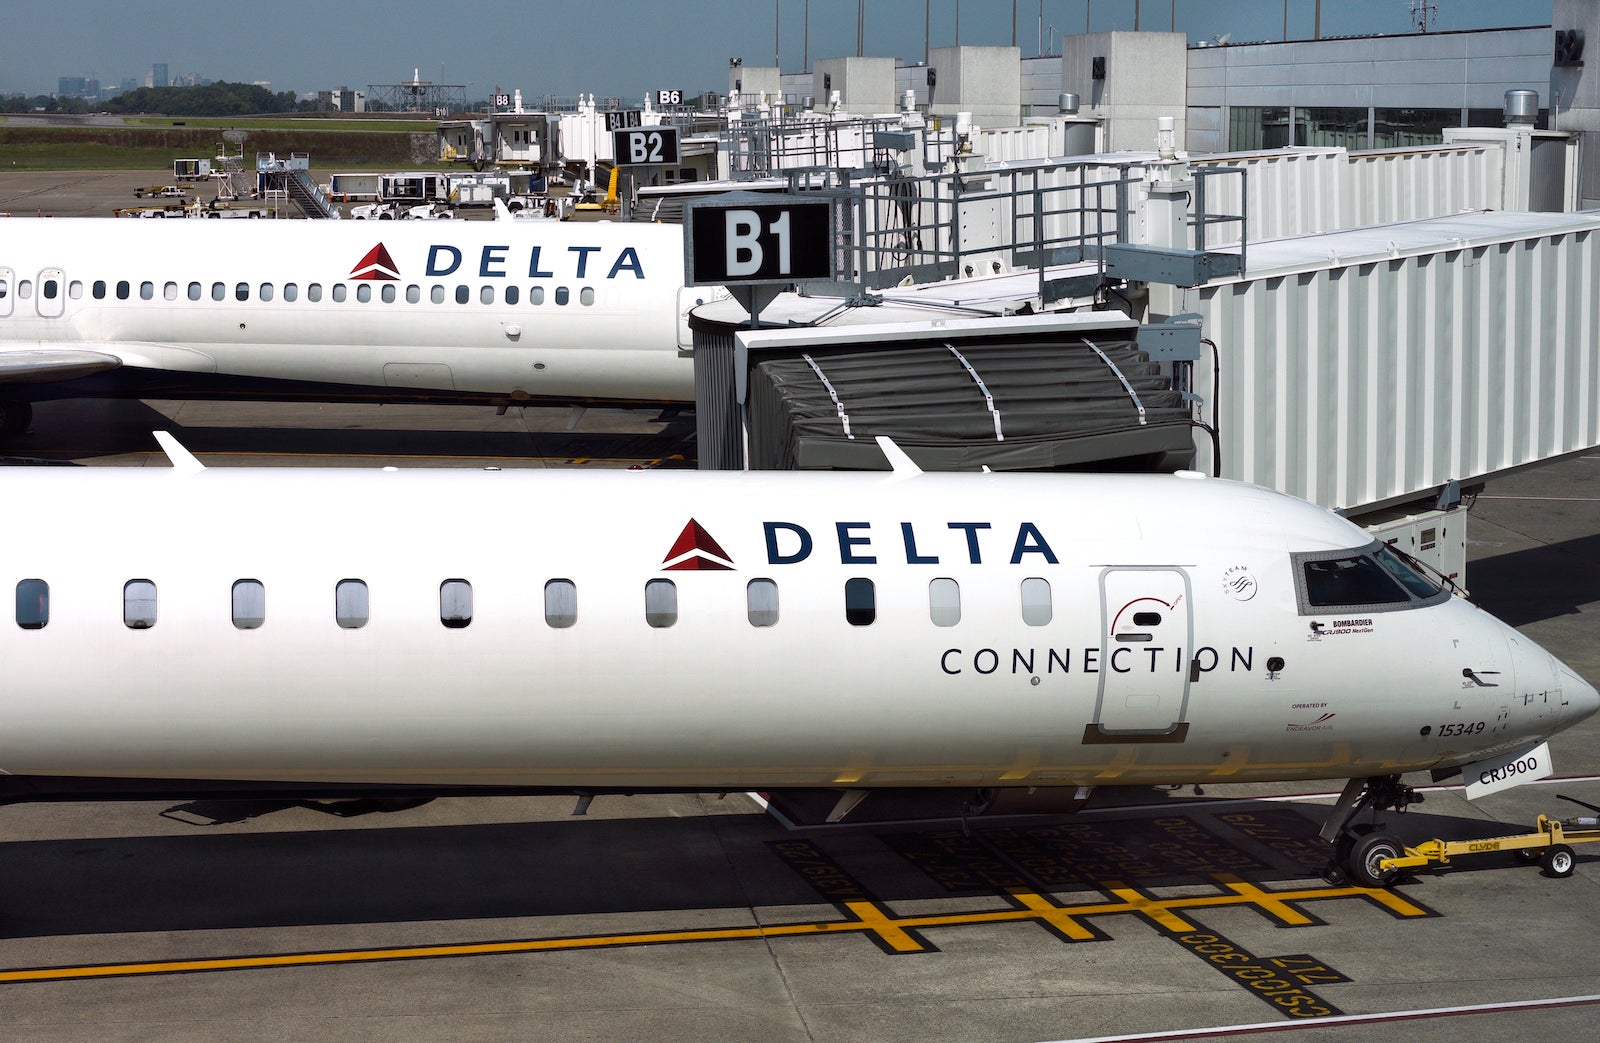 Delta Connection jets in Nashville